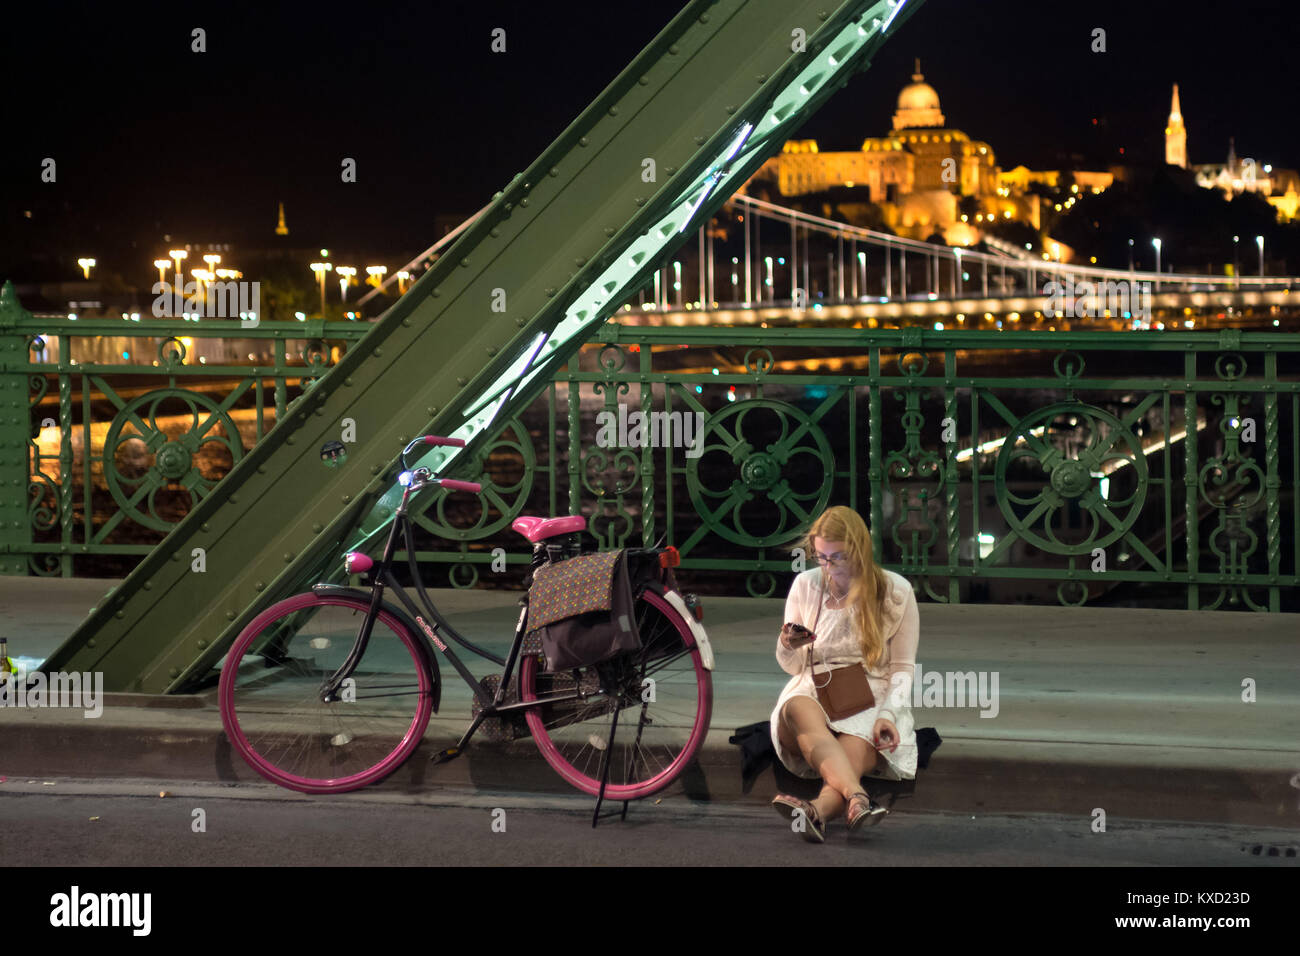 Chica sentada mirando a la pantalla del teléfono móvil en la acera al lado de la frontera aumentaron en bicicleta. Puente Liberty, Budapest Foto de stock